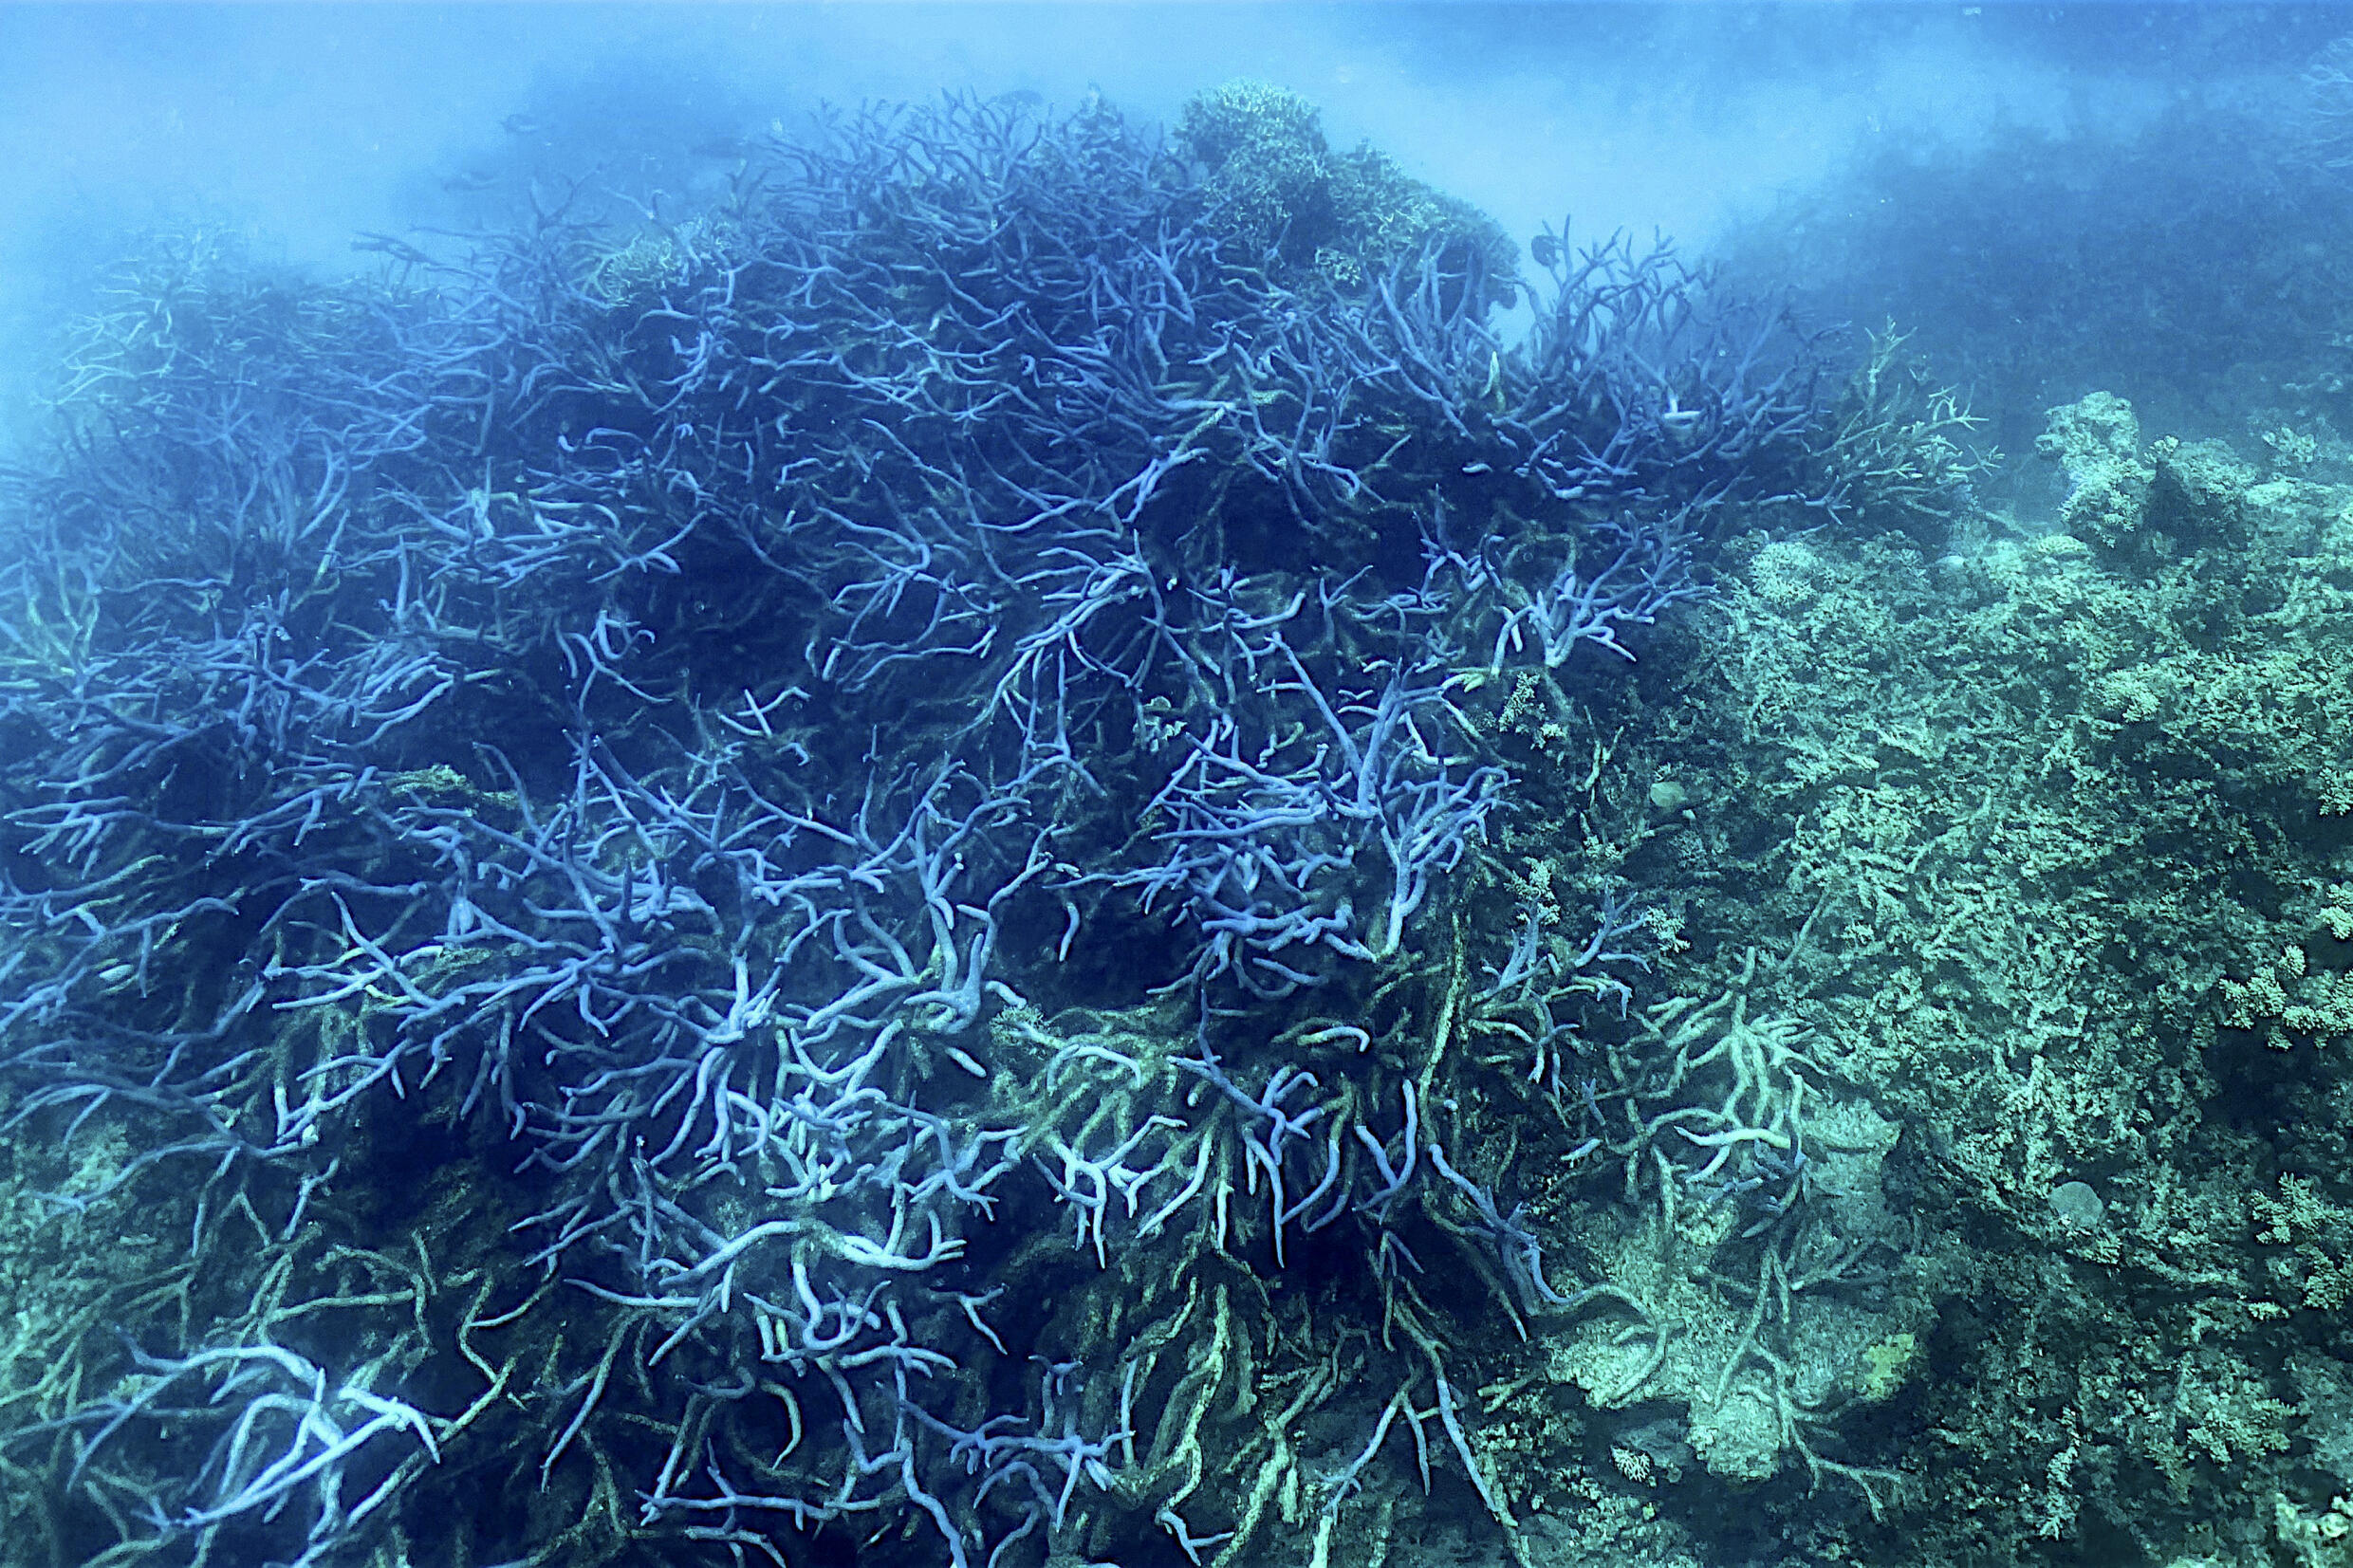 Der Hitzestress am Great Barrier Reef dürfte sich in den kommenden Wochen verschlimmern, sagte ein Korallenriff-Wissenschaftler gegenüber AFP